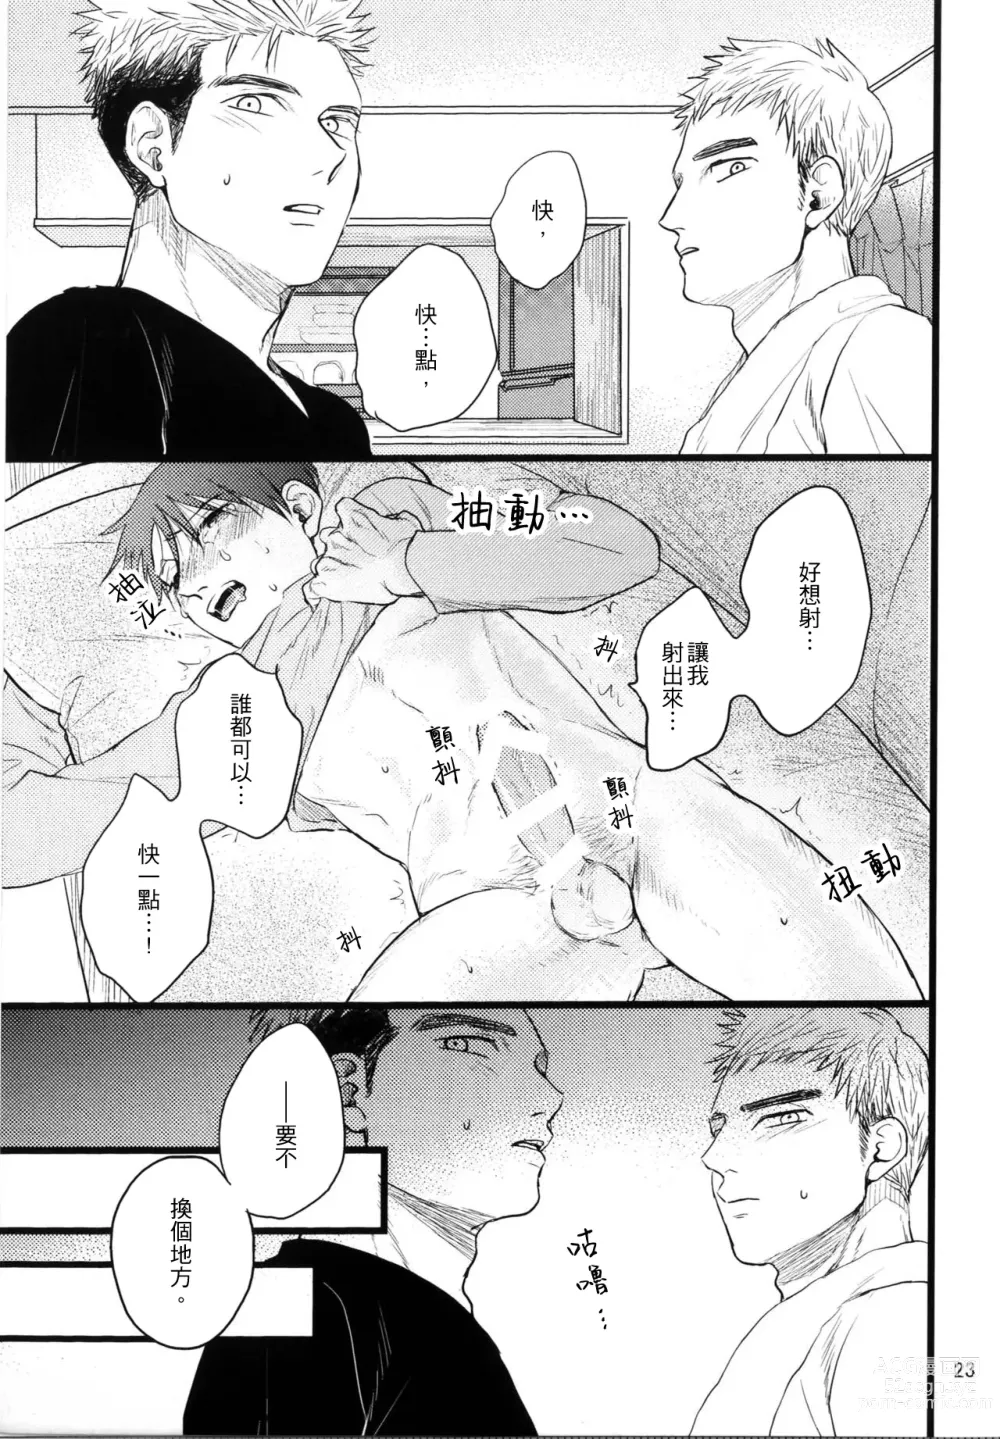 Page 21 of doujinshi Umi ga Nakano de Nakano ga Umi de